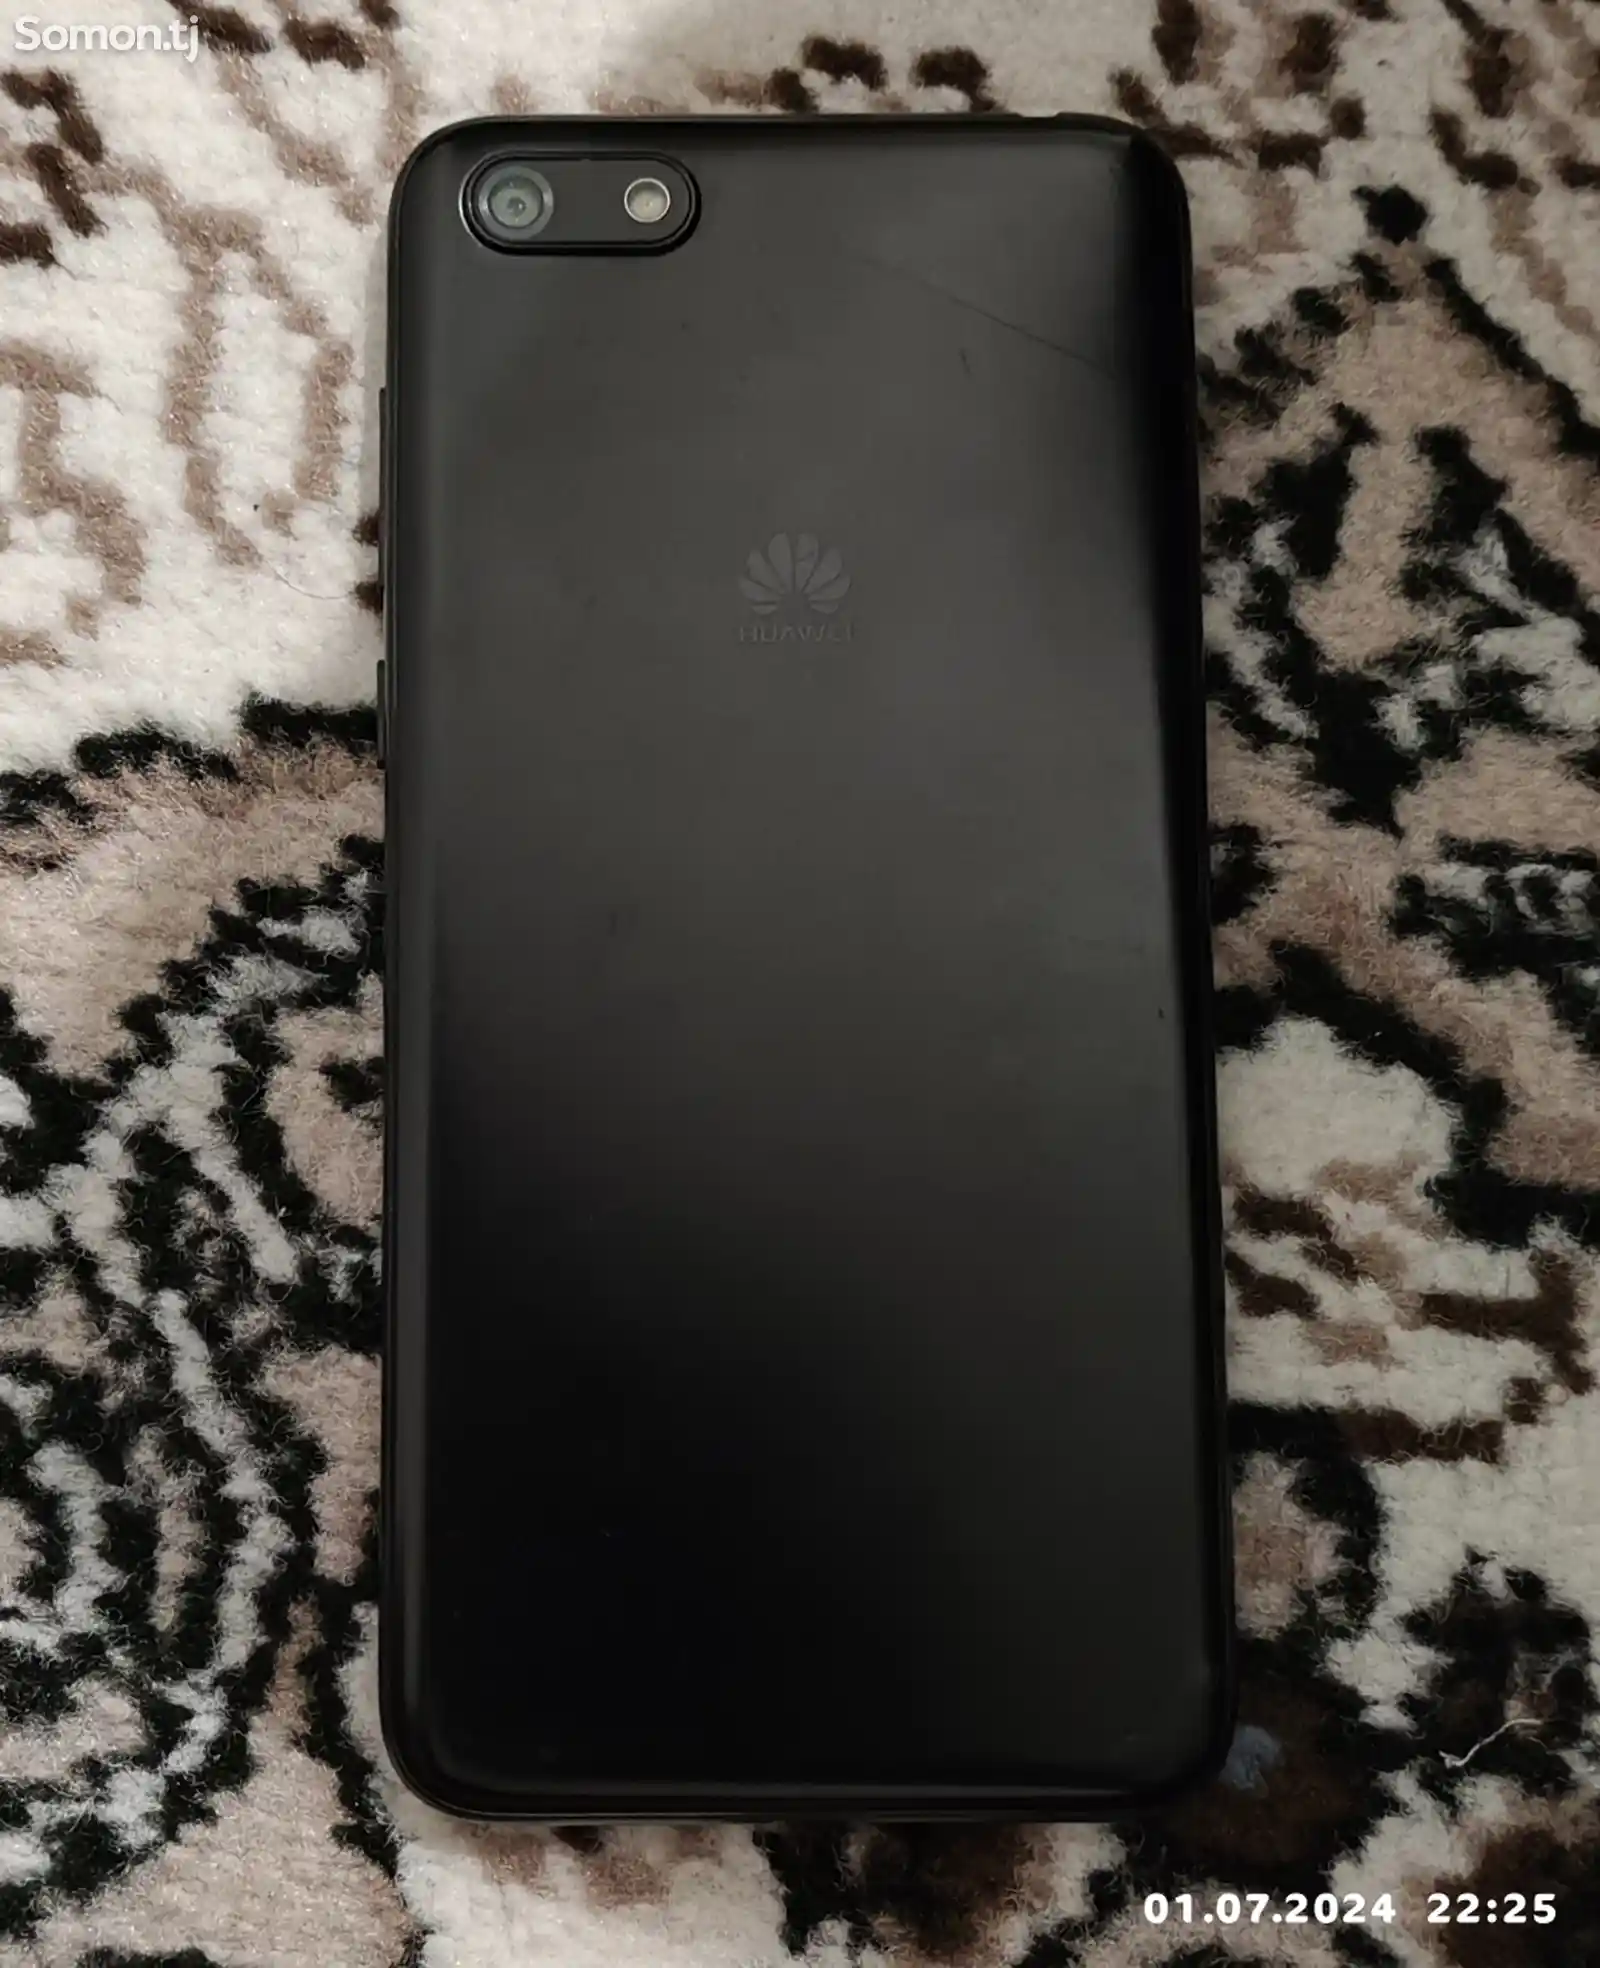 Huawei Y5-2